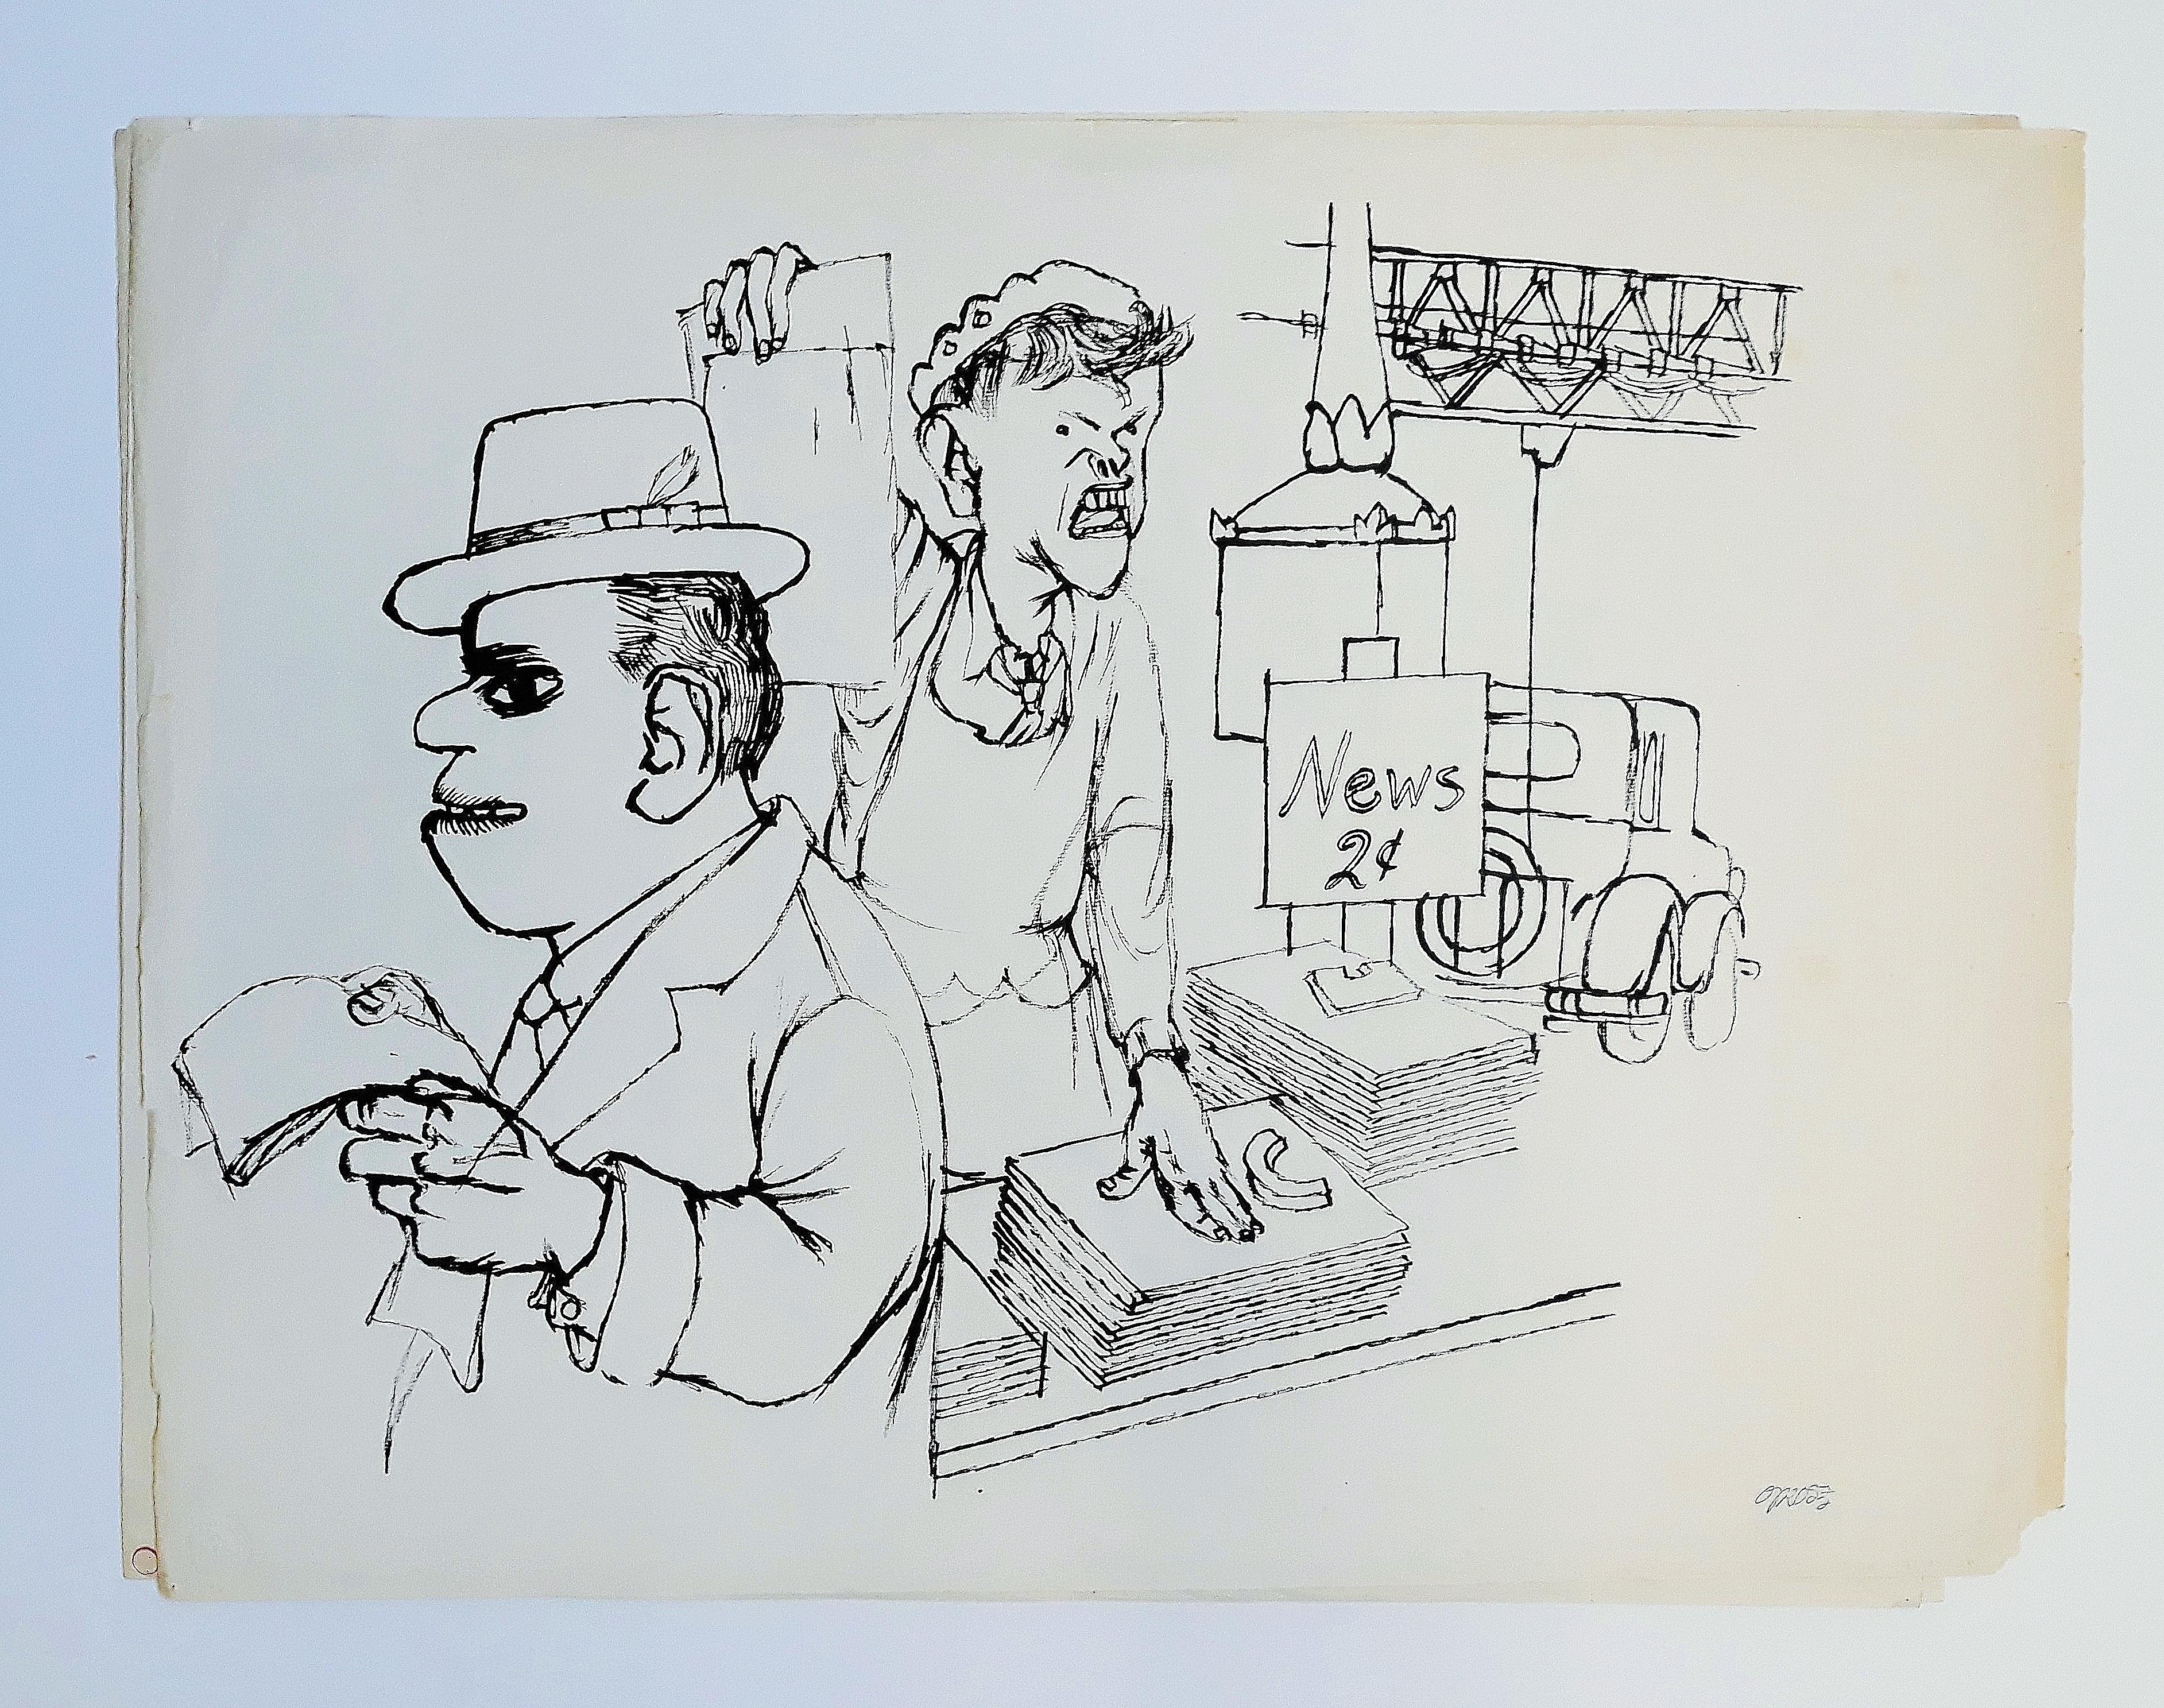 Vendor News, New York  - Dessin à l'encre de Chine sur papier par G. Grosz - 1932 - Expressionniste Art par George Grosz